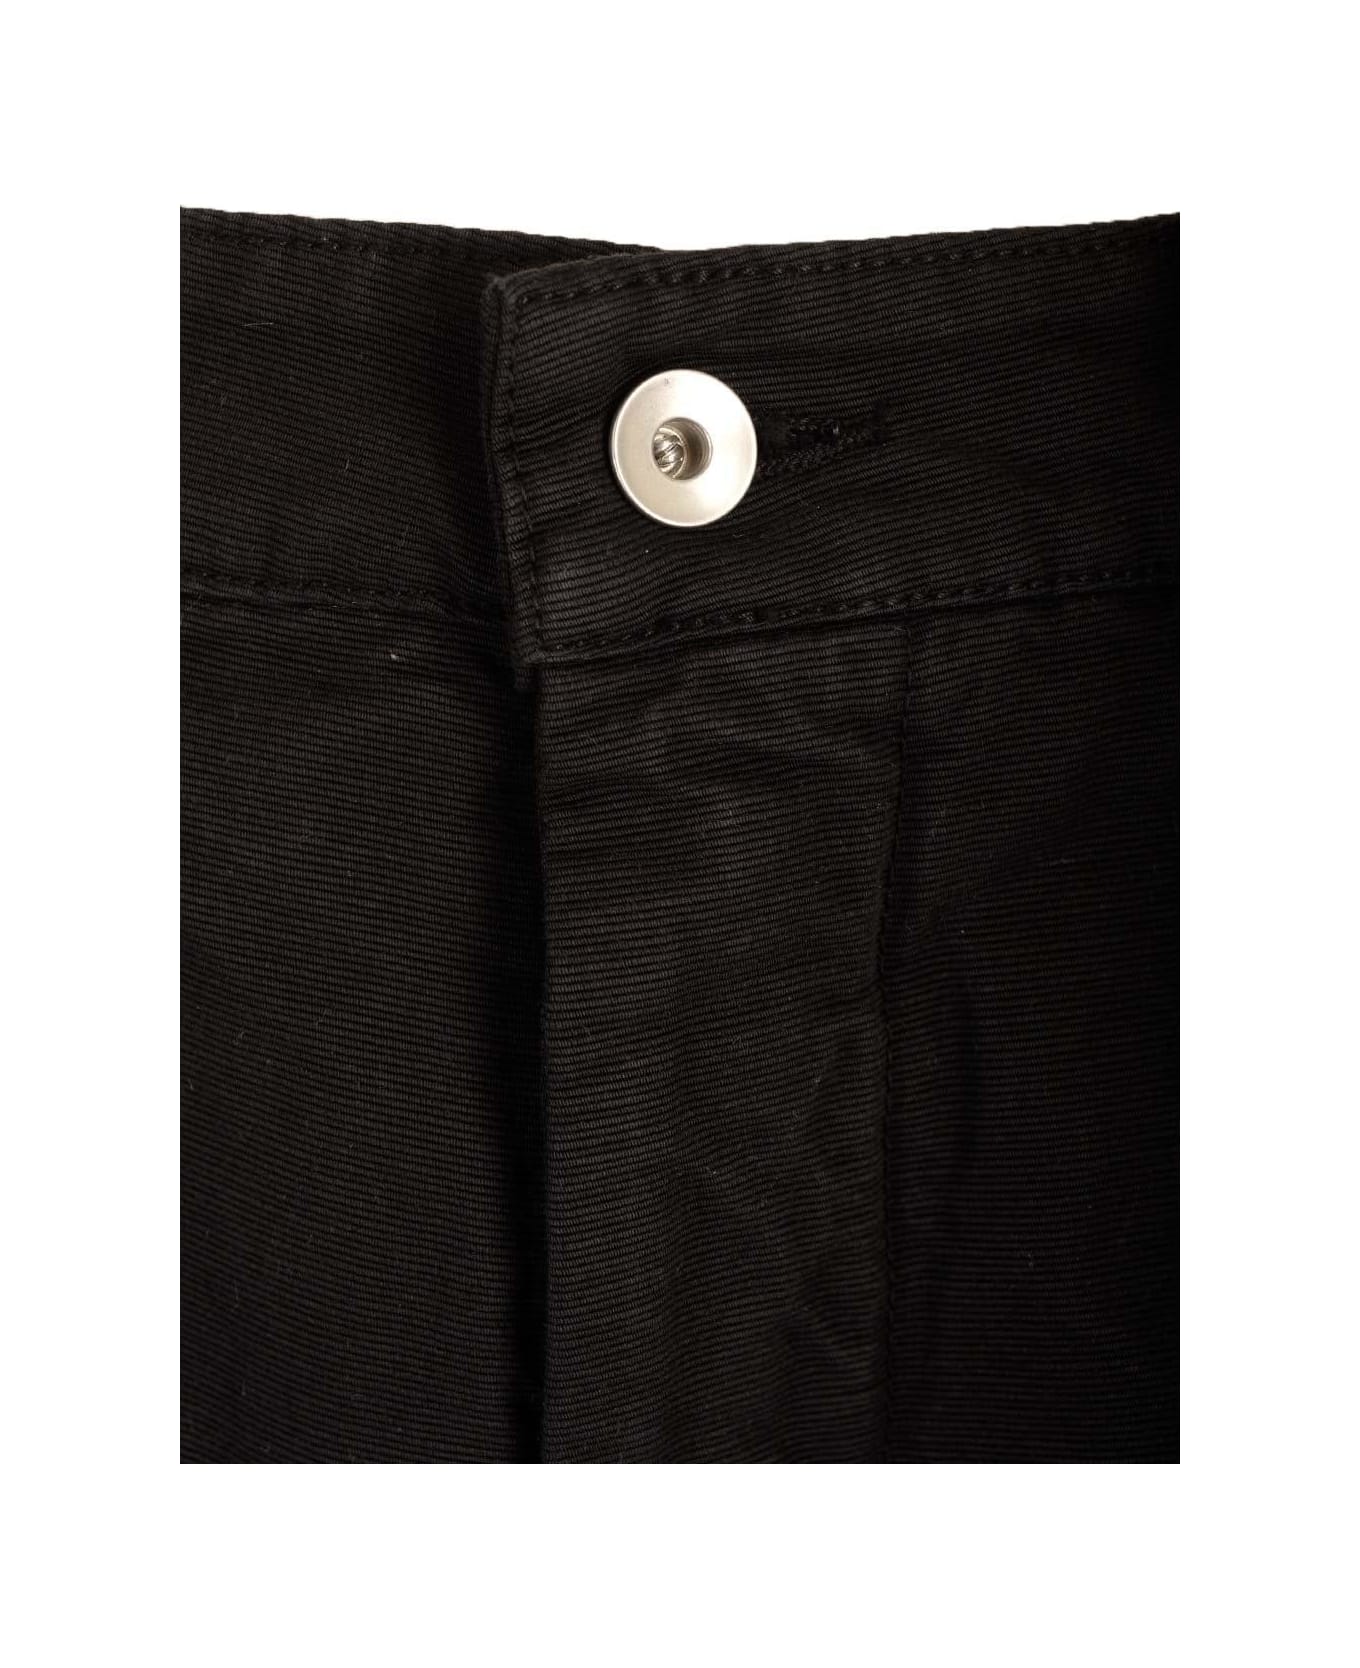 DRKSHDW Knee-length Shorts - Black